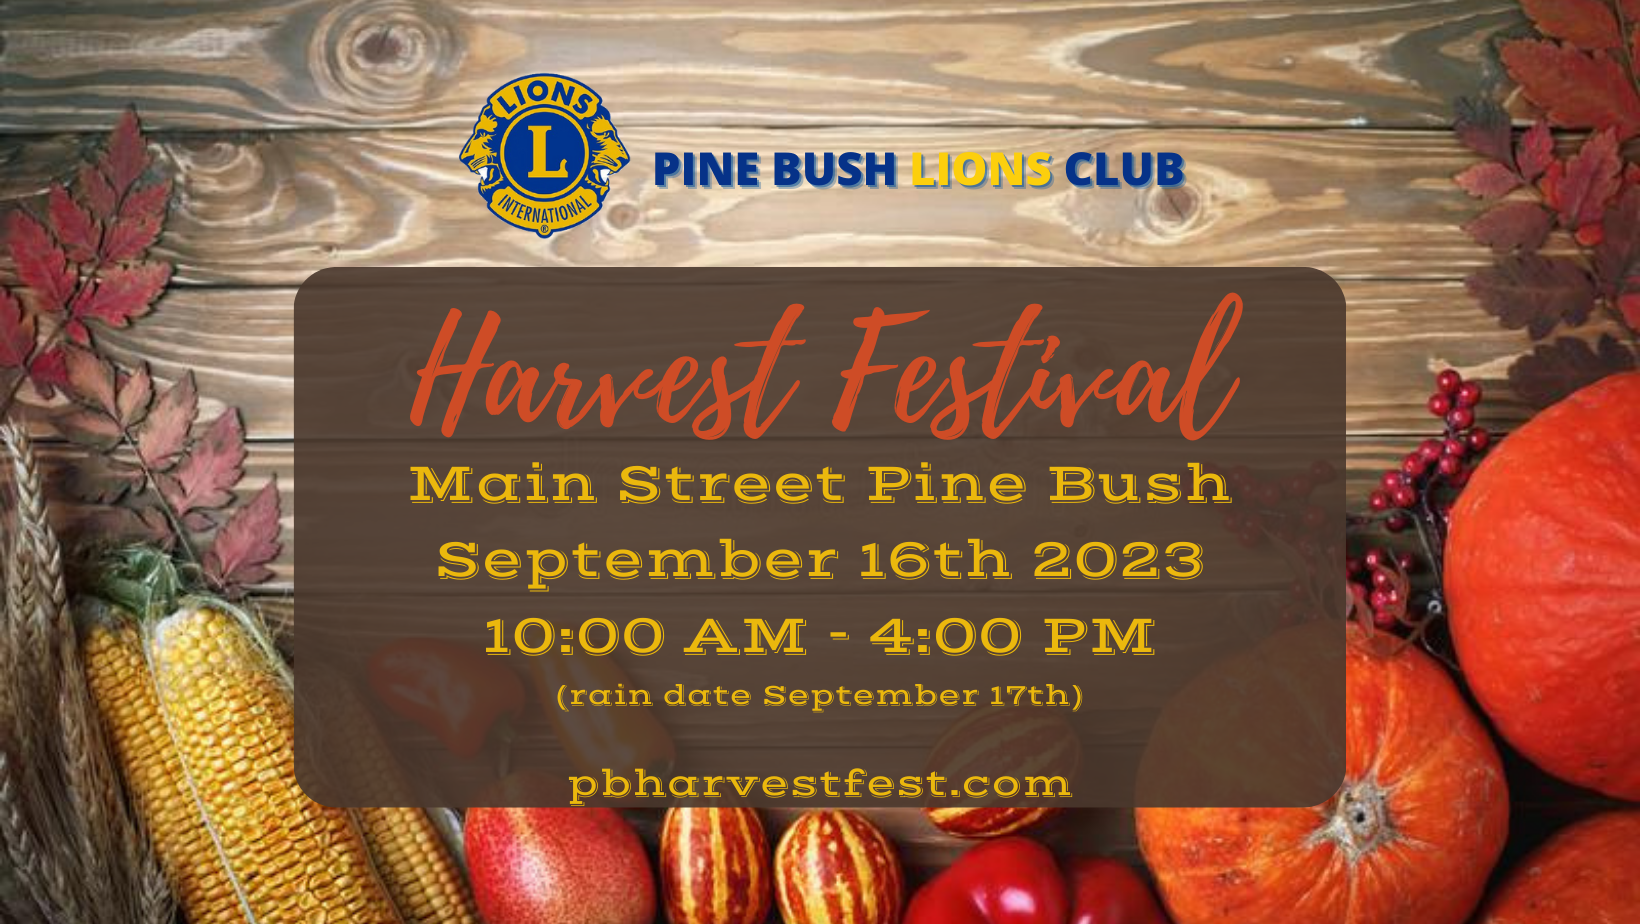 Pine Bush Lions Club